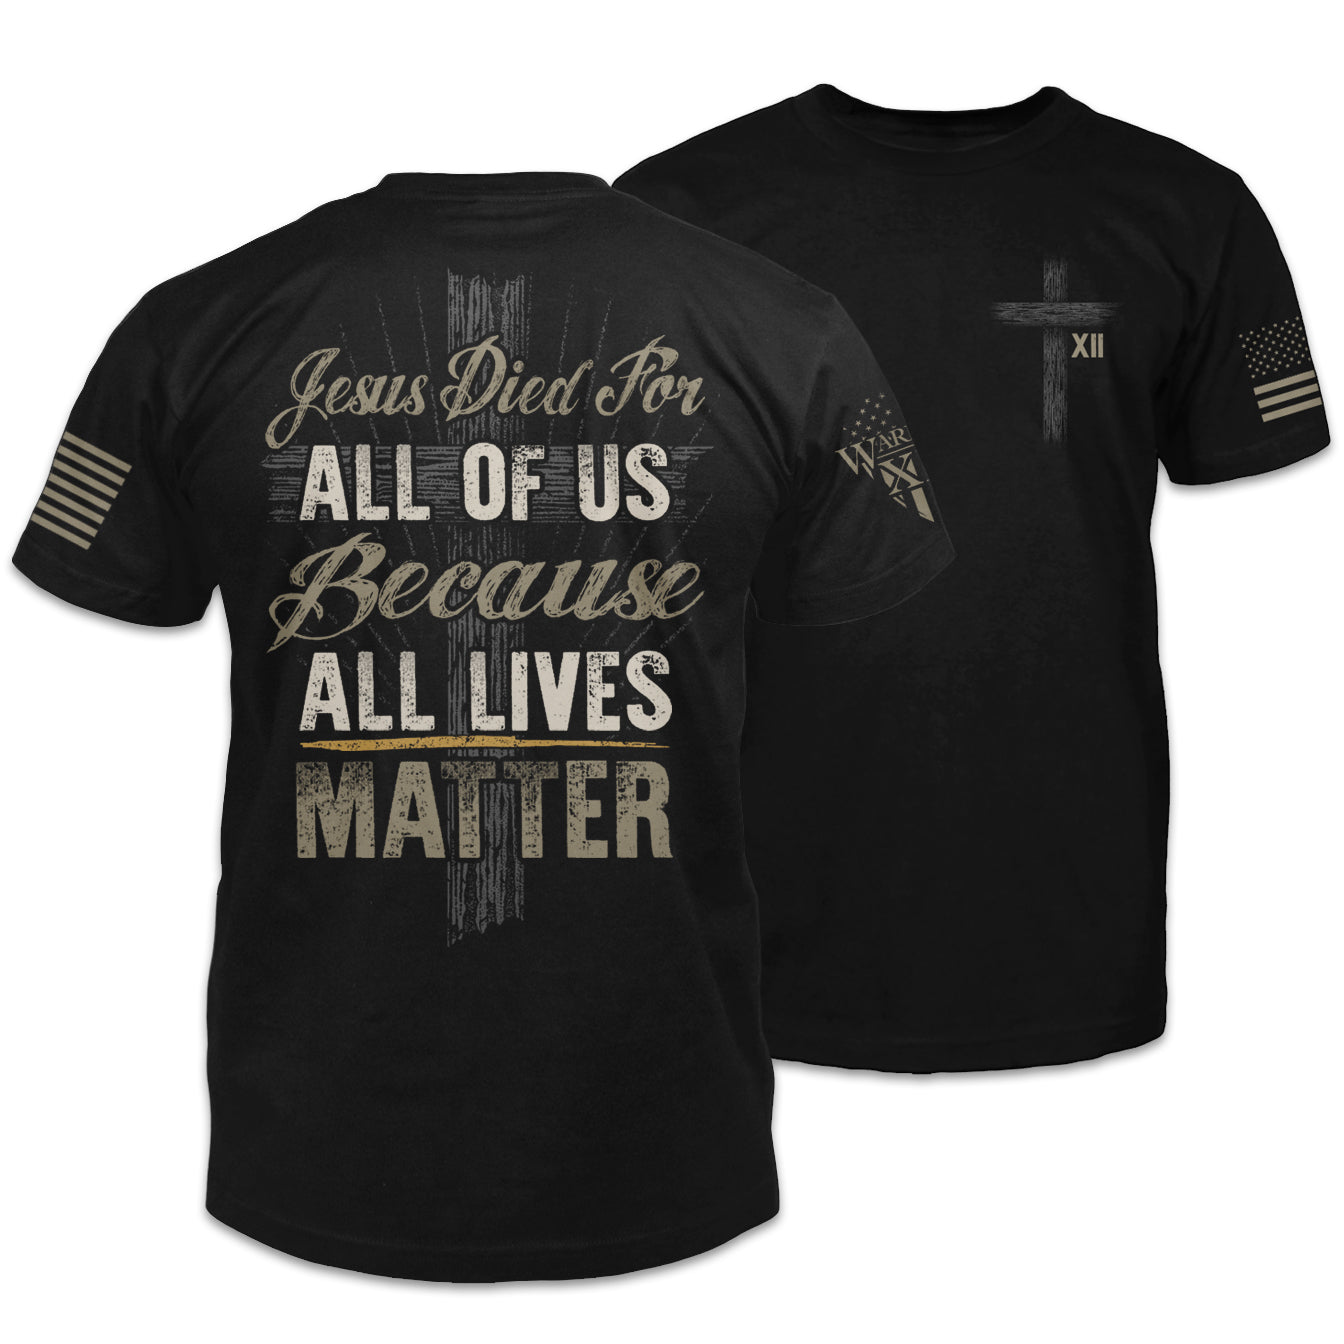 All Lives Matter shirt - Warrior 12